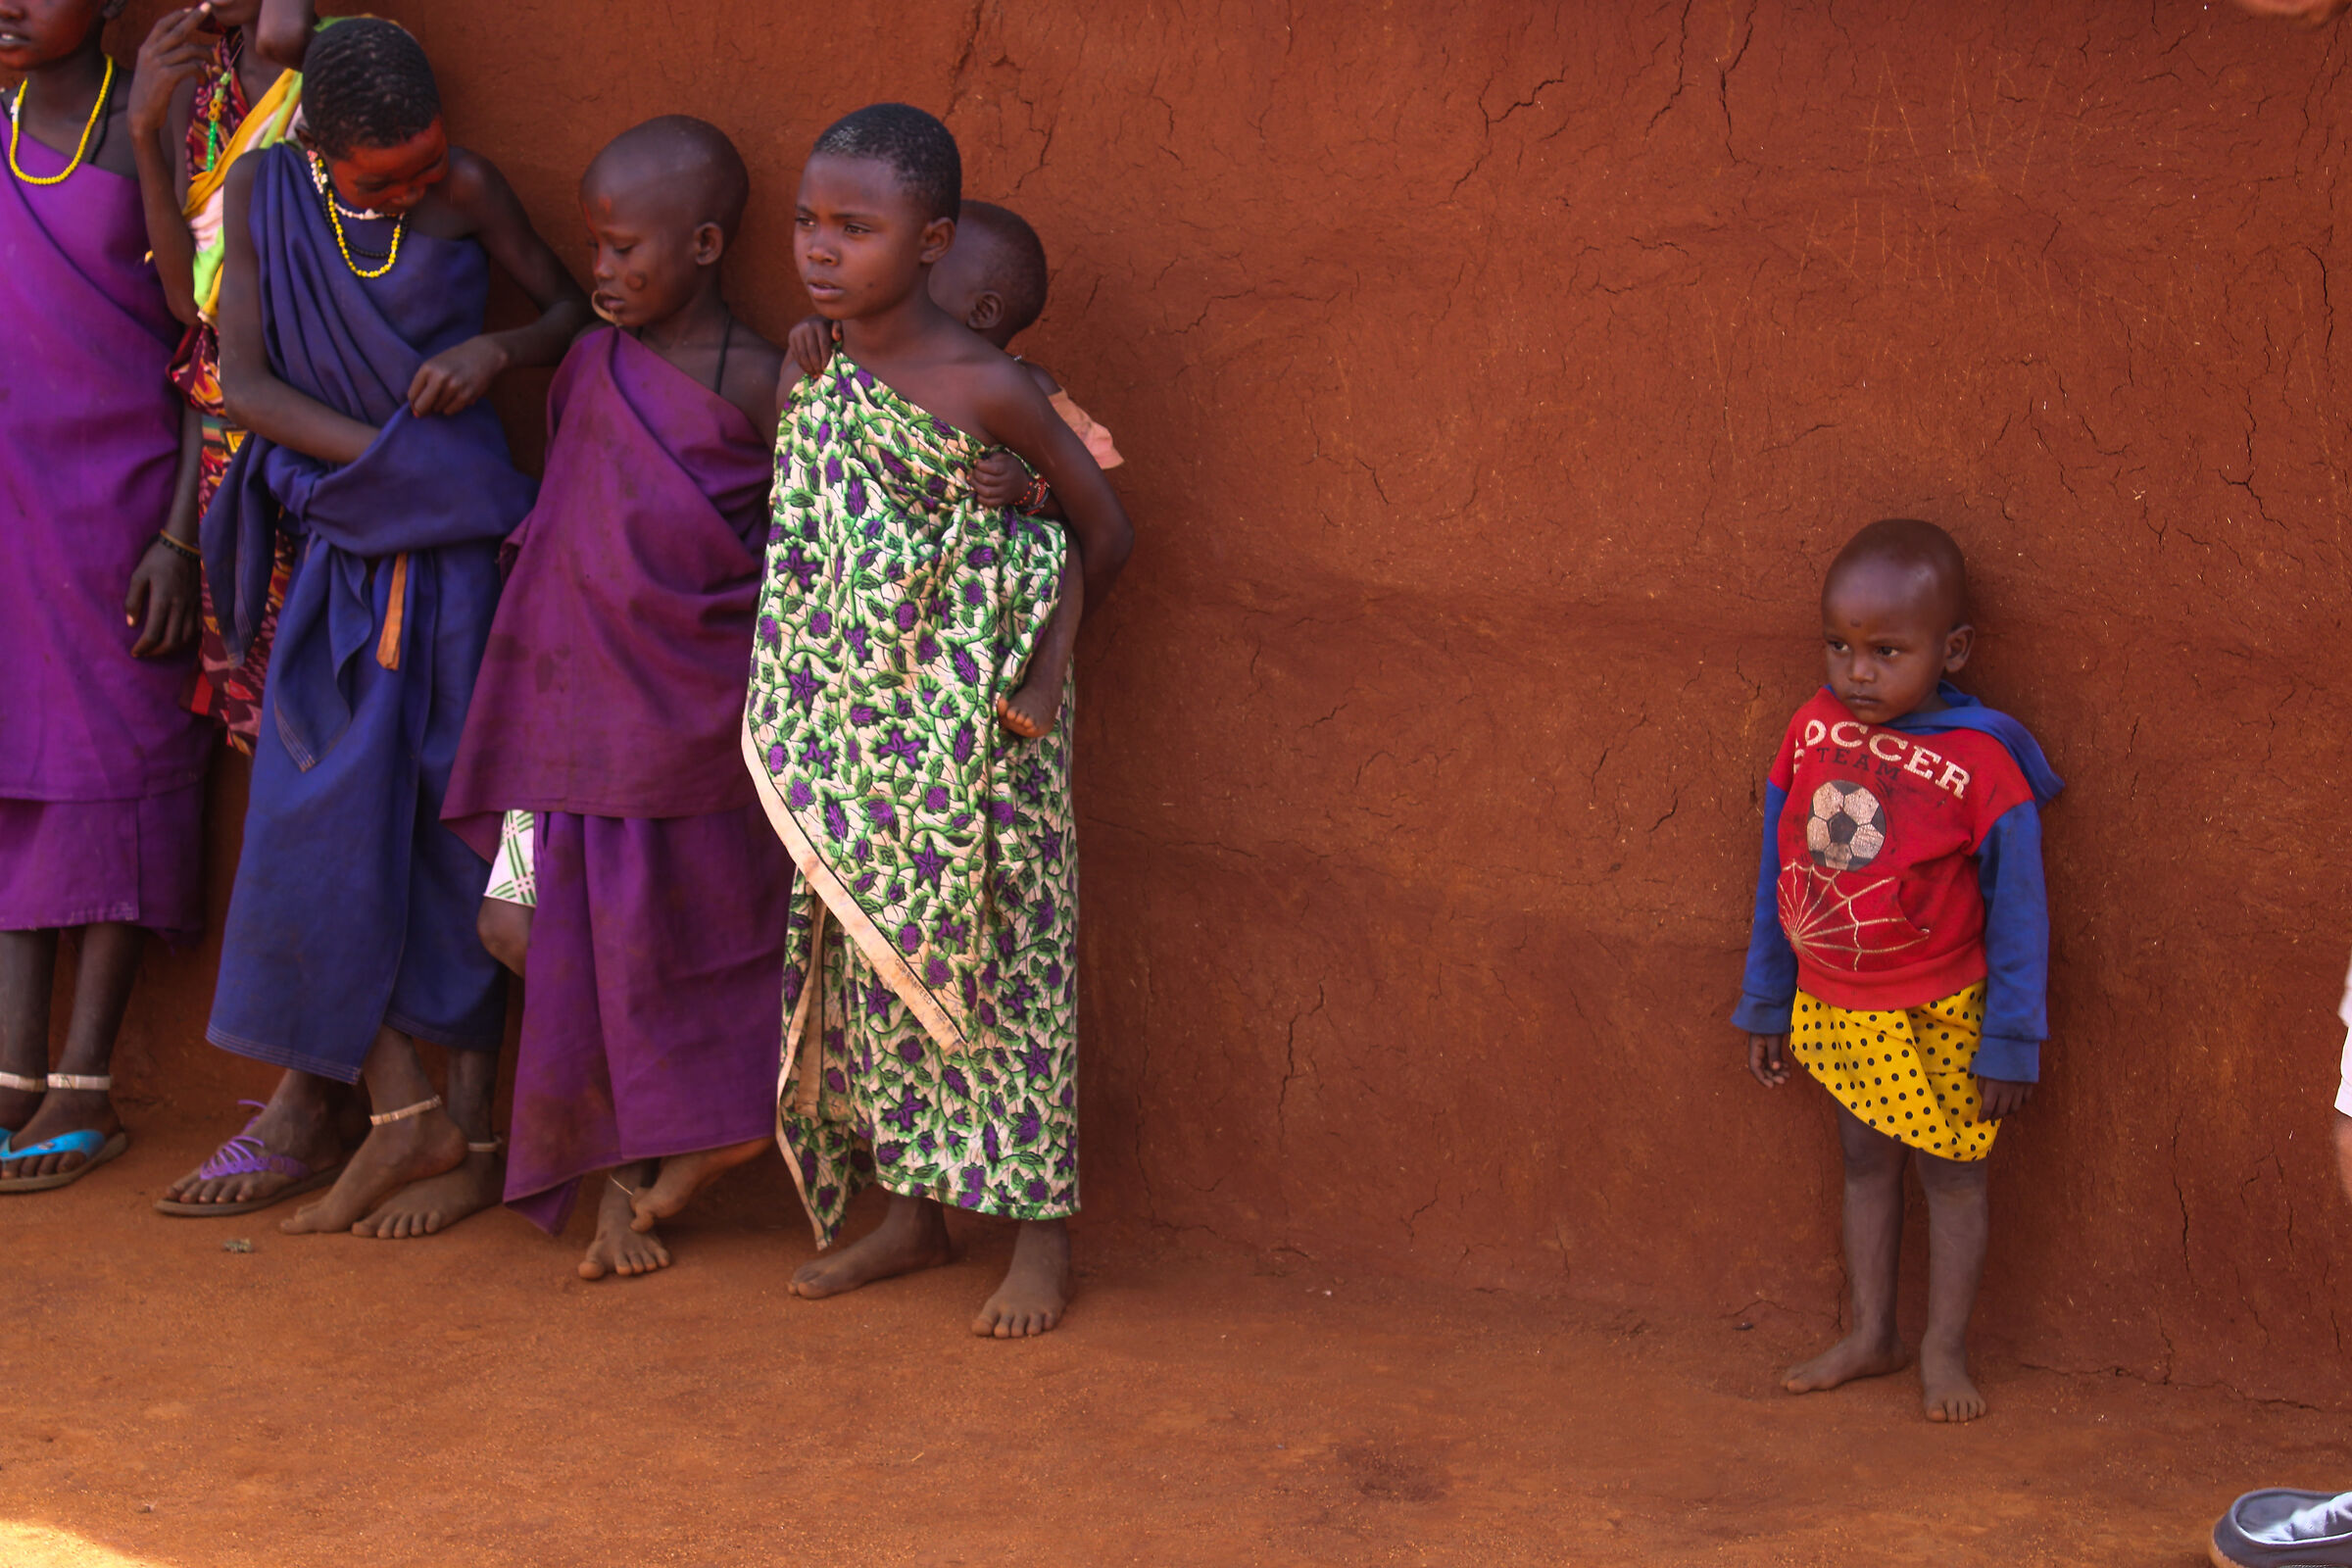 Visit to the Maasai village...